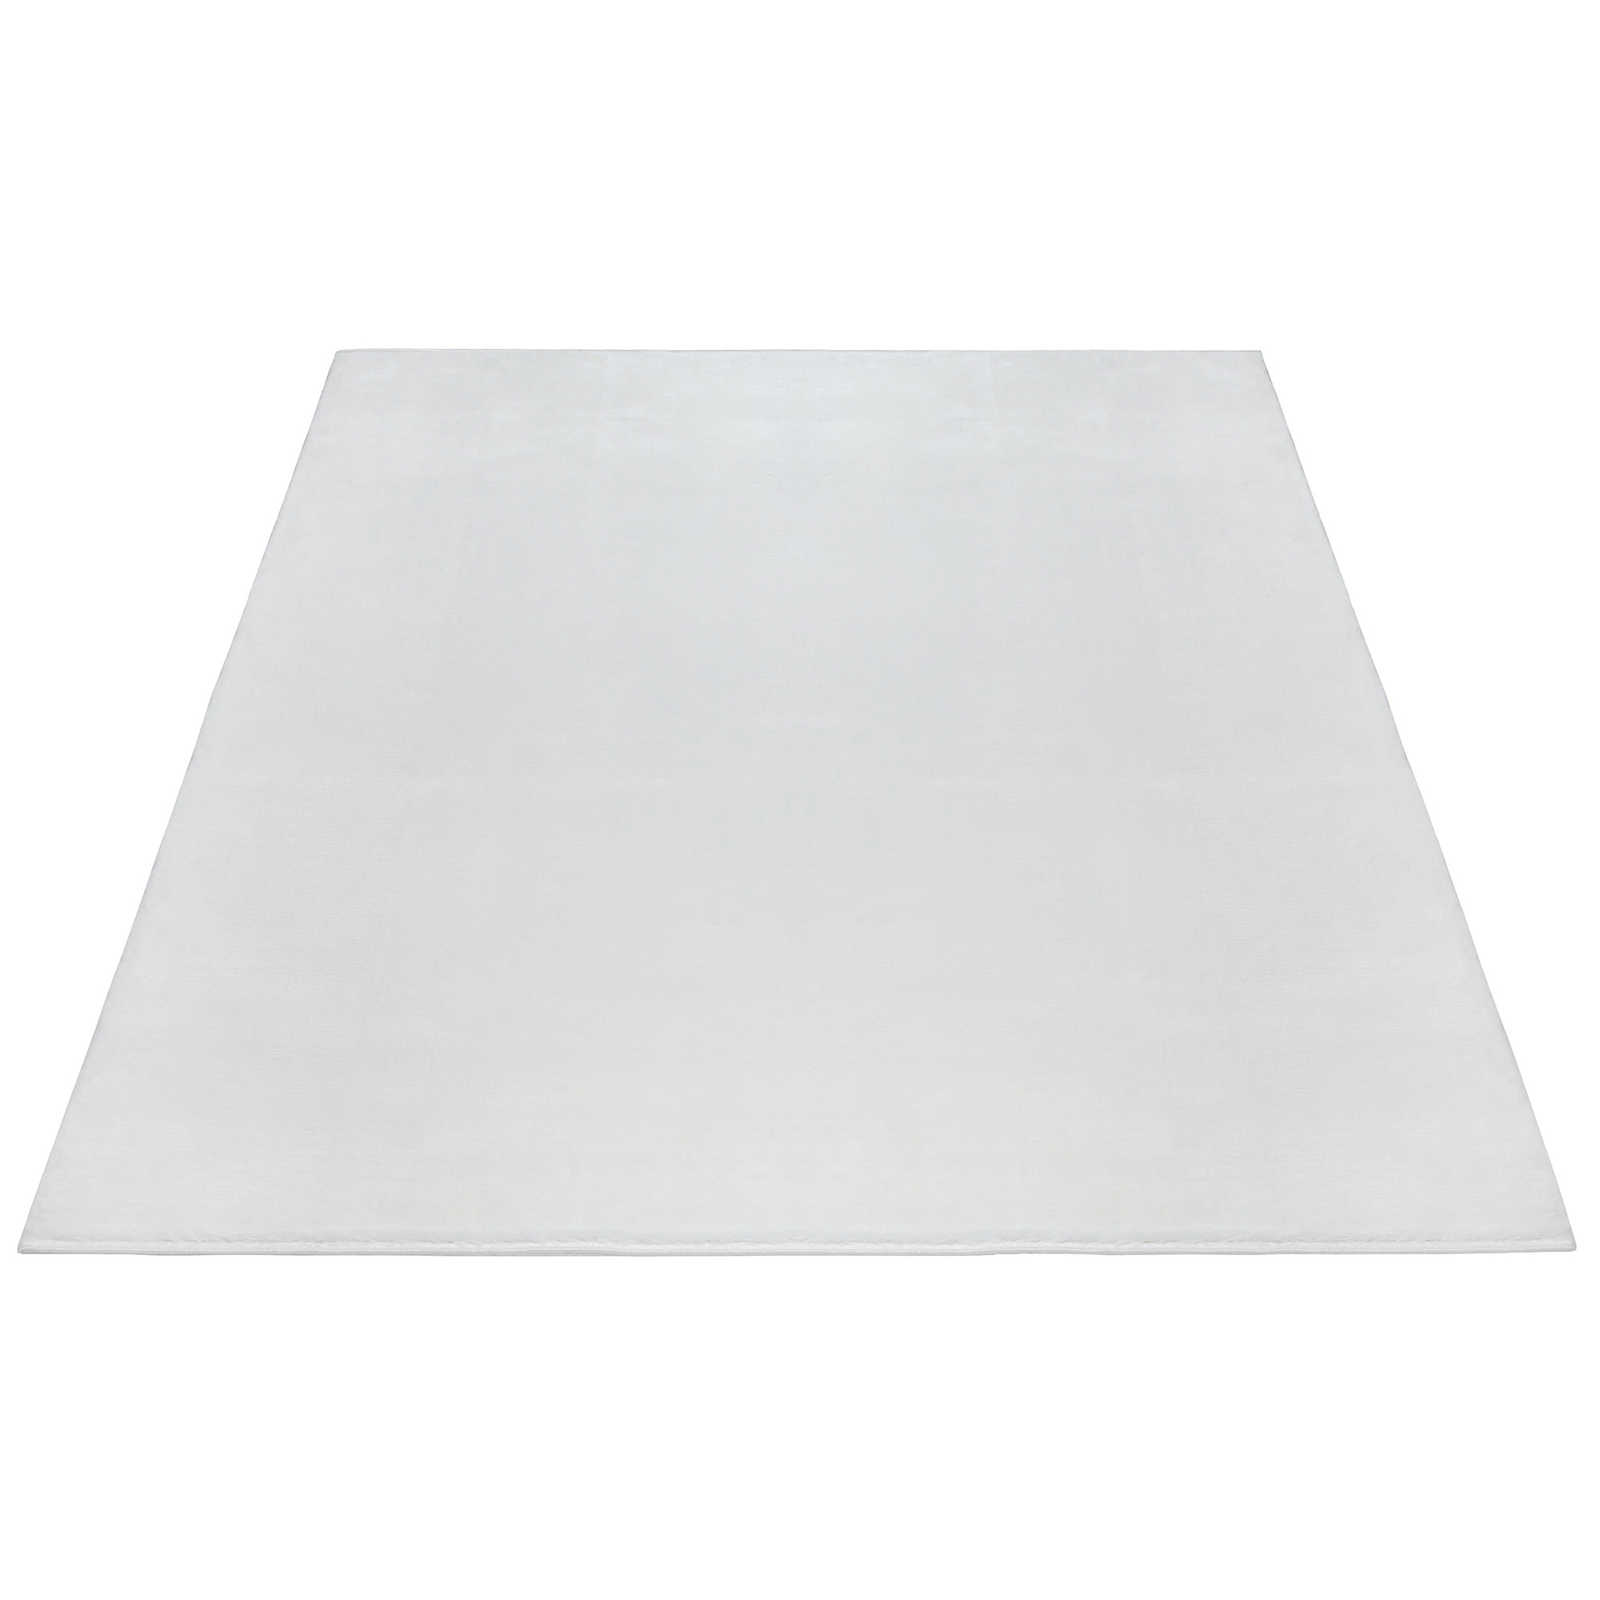 Flauschiger Hochflor Teppich in angenehmen Creme – 290 x 200 cm
